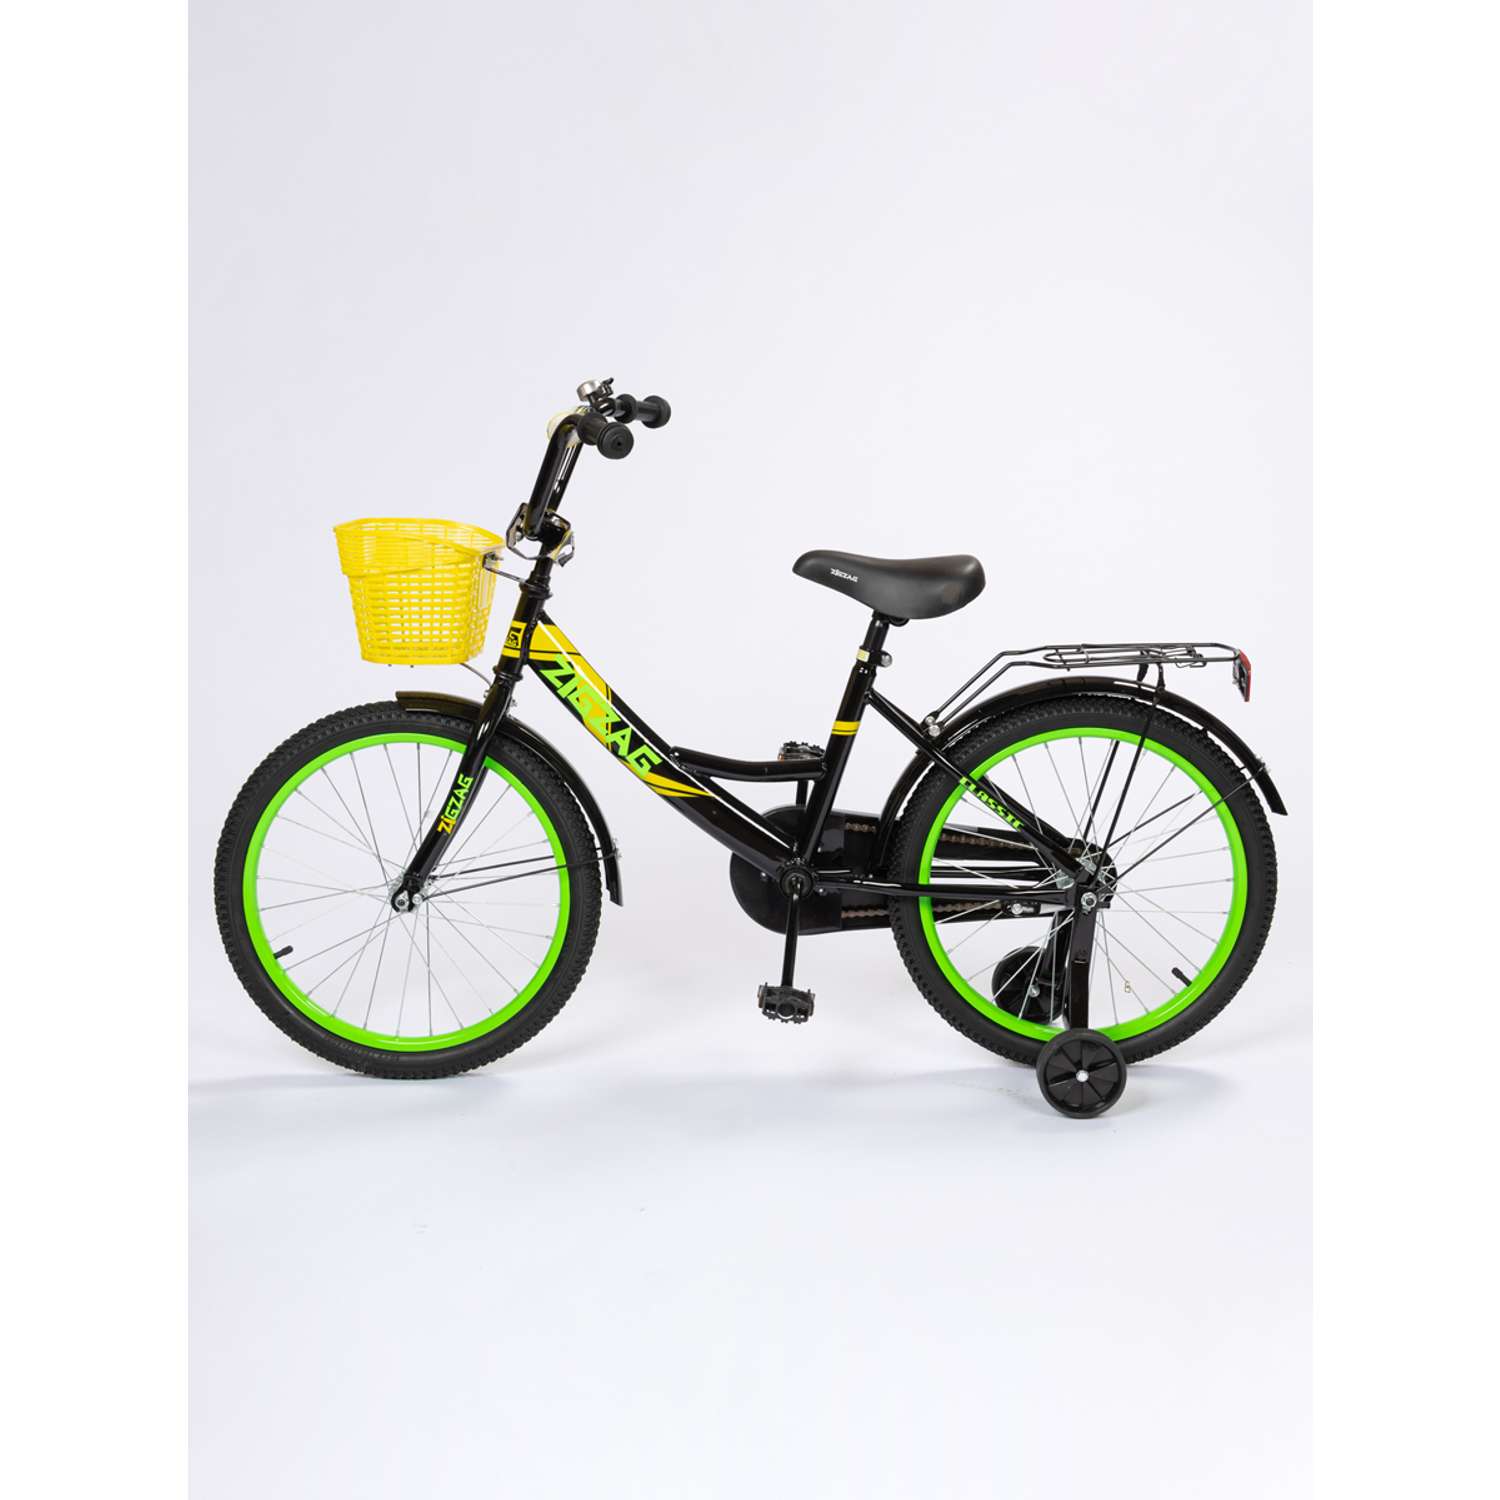 Велосипед ZigZag CLASSIC черный желтый зеленый 18 дюймов - фото 5